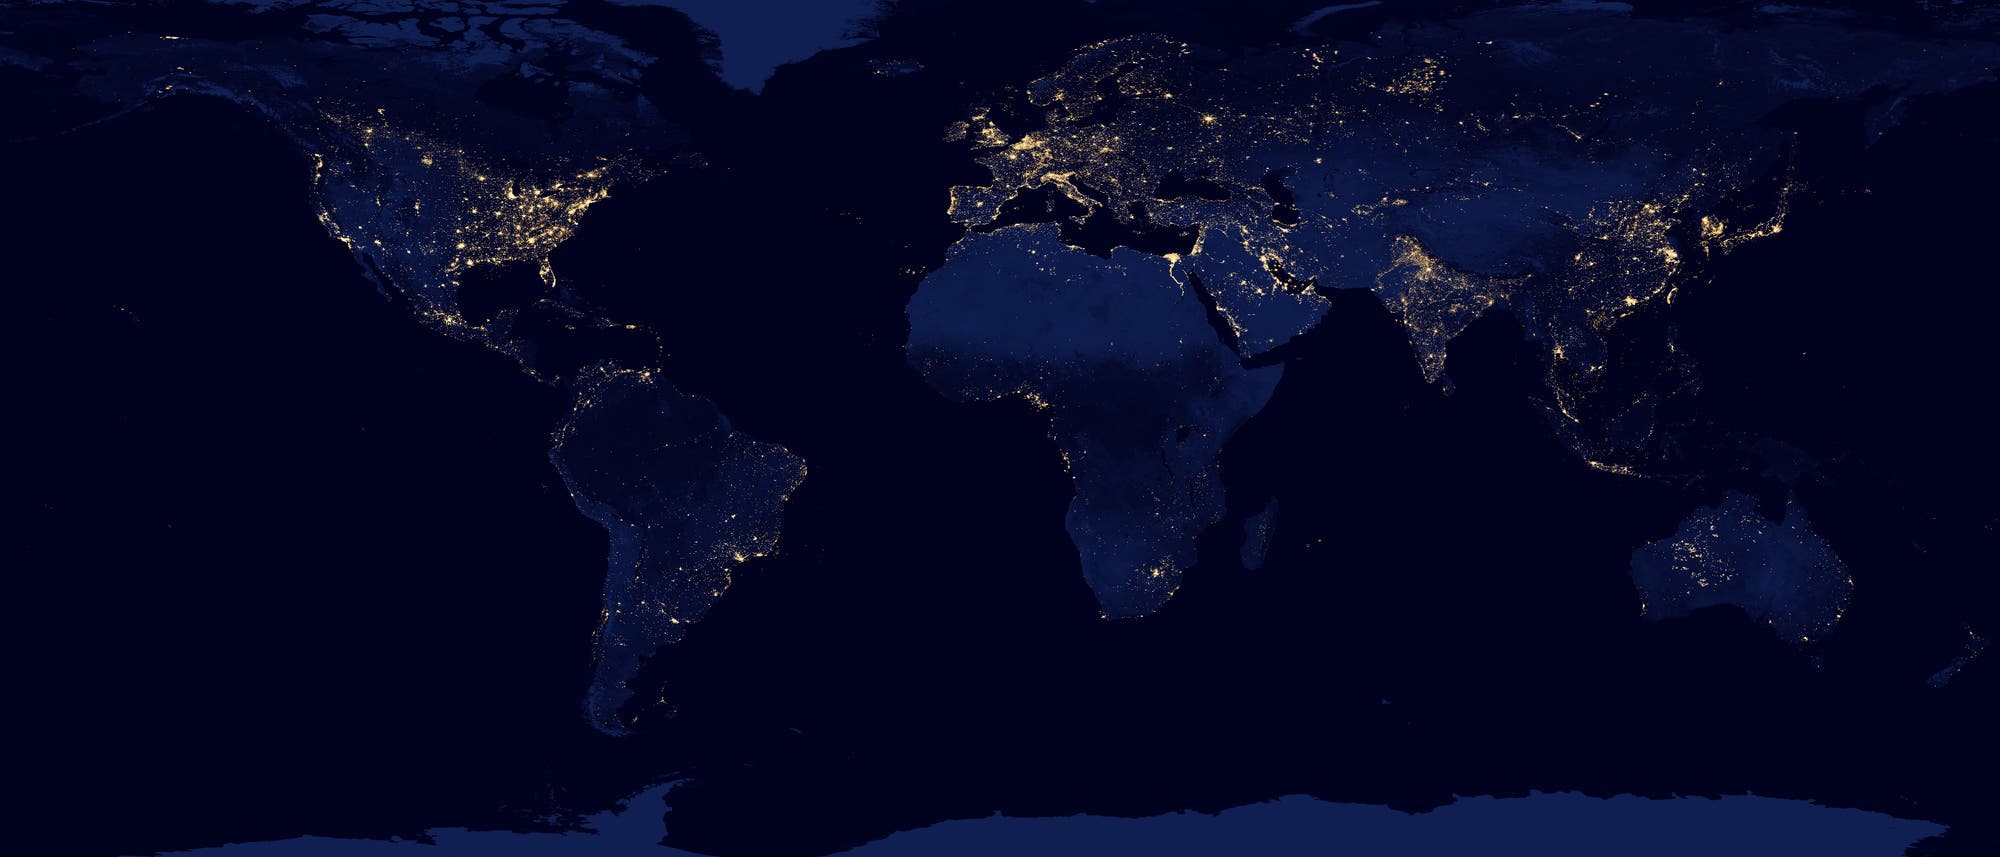 Die Nachtseite der Erde verrät, wo die großen Metropolen liegen: Sie verraten sich anhand ihrer künstlichen Beleuchtung. Das Bild wurde aus Daten der Kamera VIIRS-DNB an Bord des Satelliten Suomi NPP vom April und Oktober 2012 erstellt.